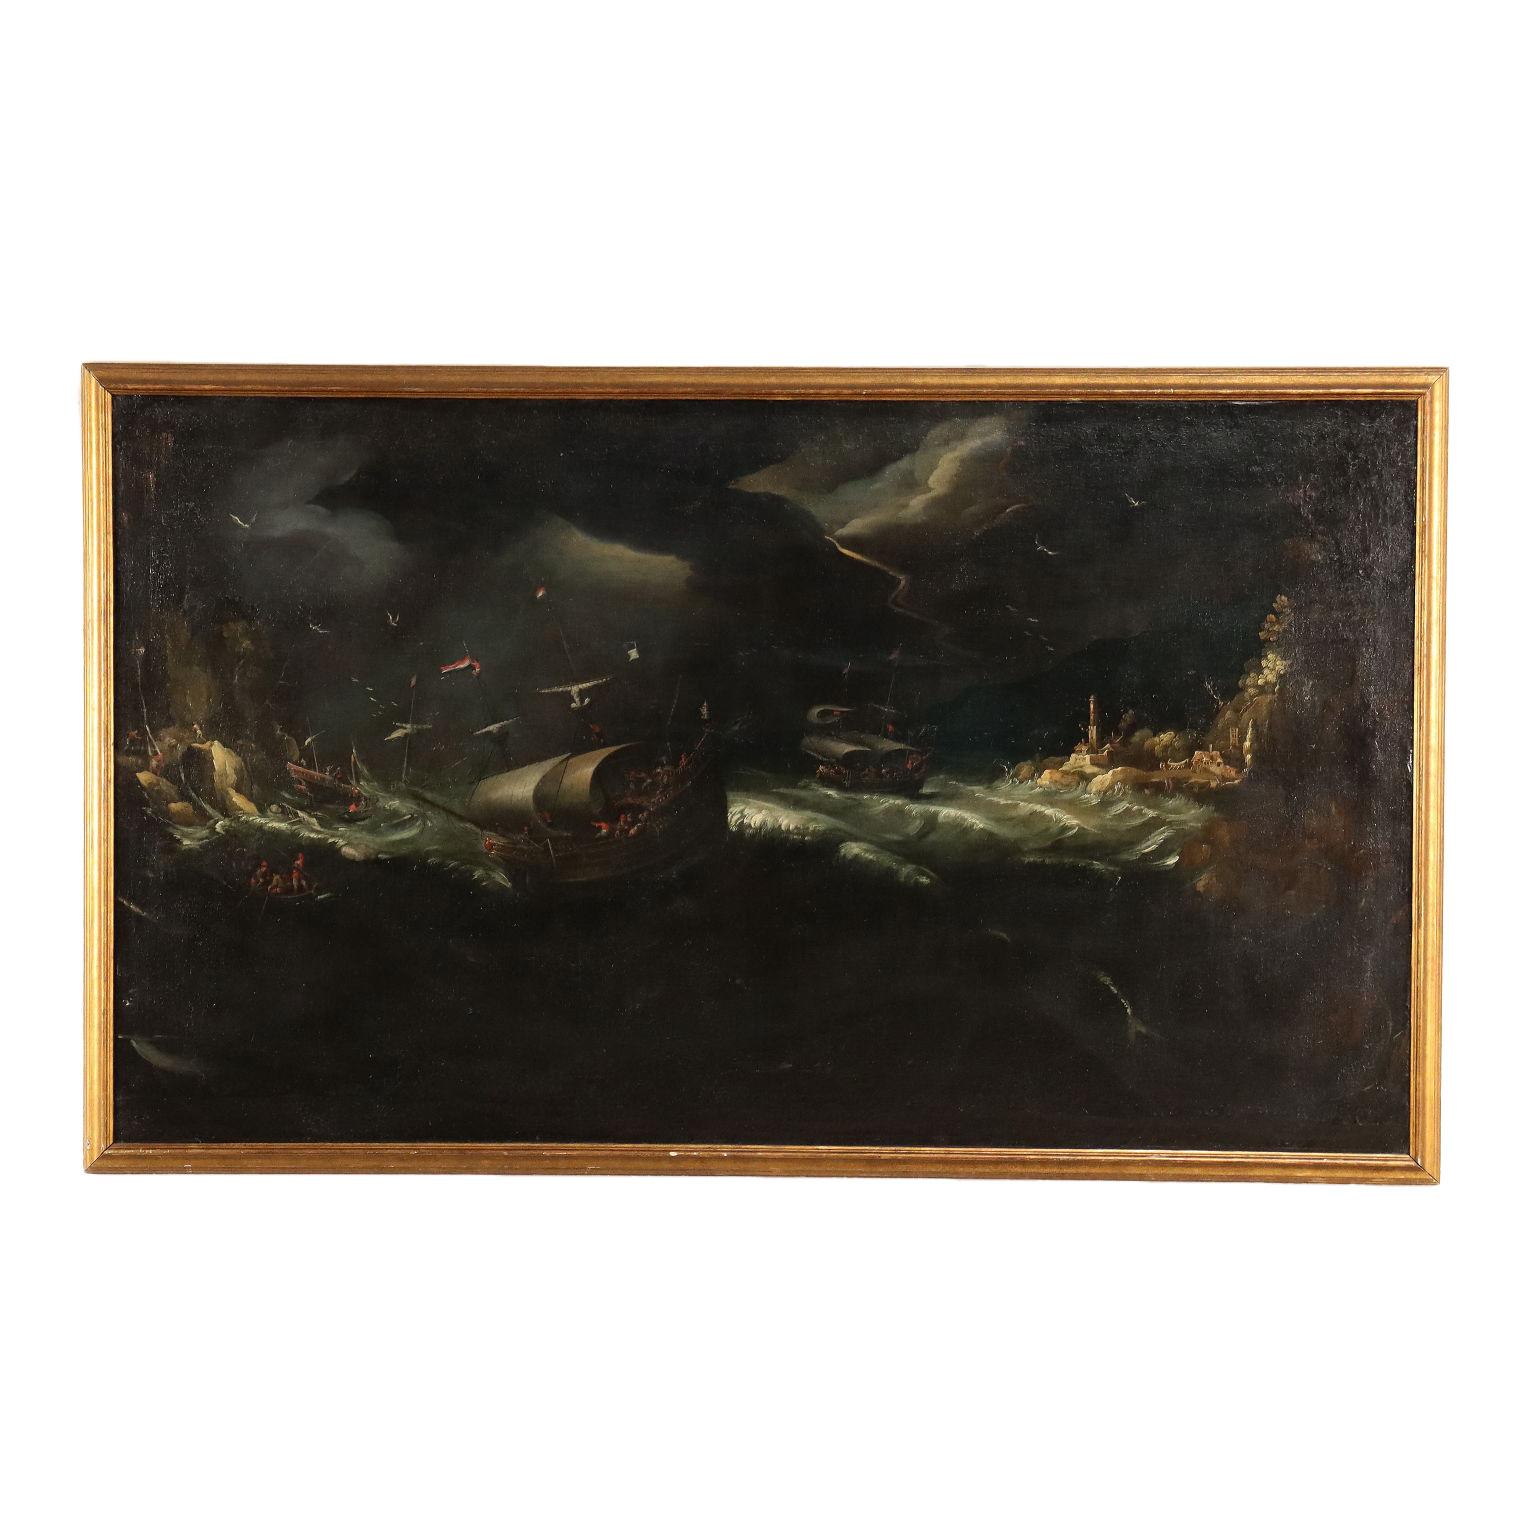 Unknown Landscape Painting – Stürmisches Meer Öl auf Leinwand Flämische Schule XVII Jahrhundert